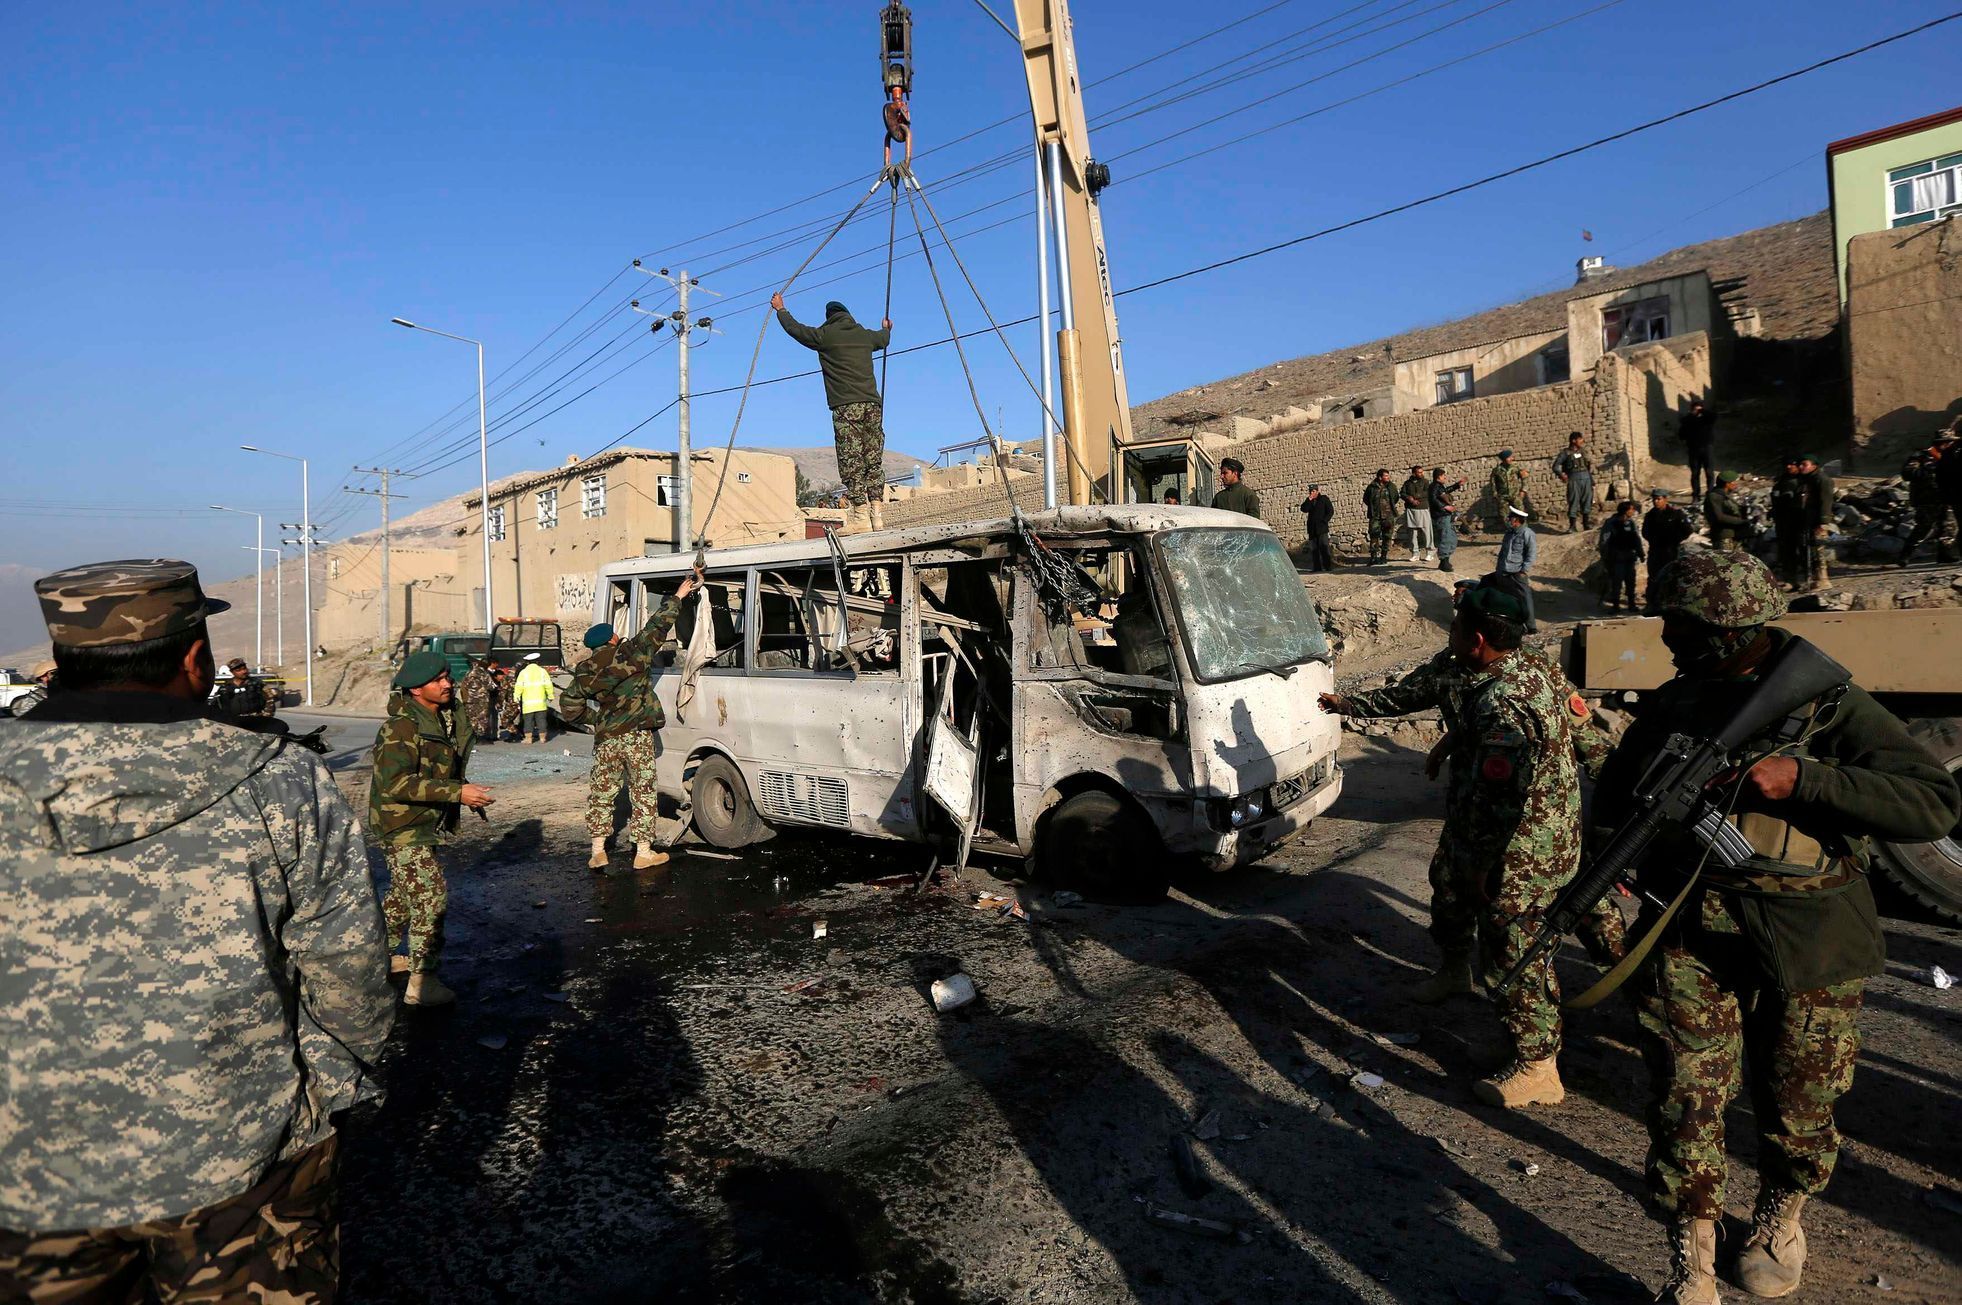 Sebevražedný útok v Afghánistánu